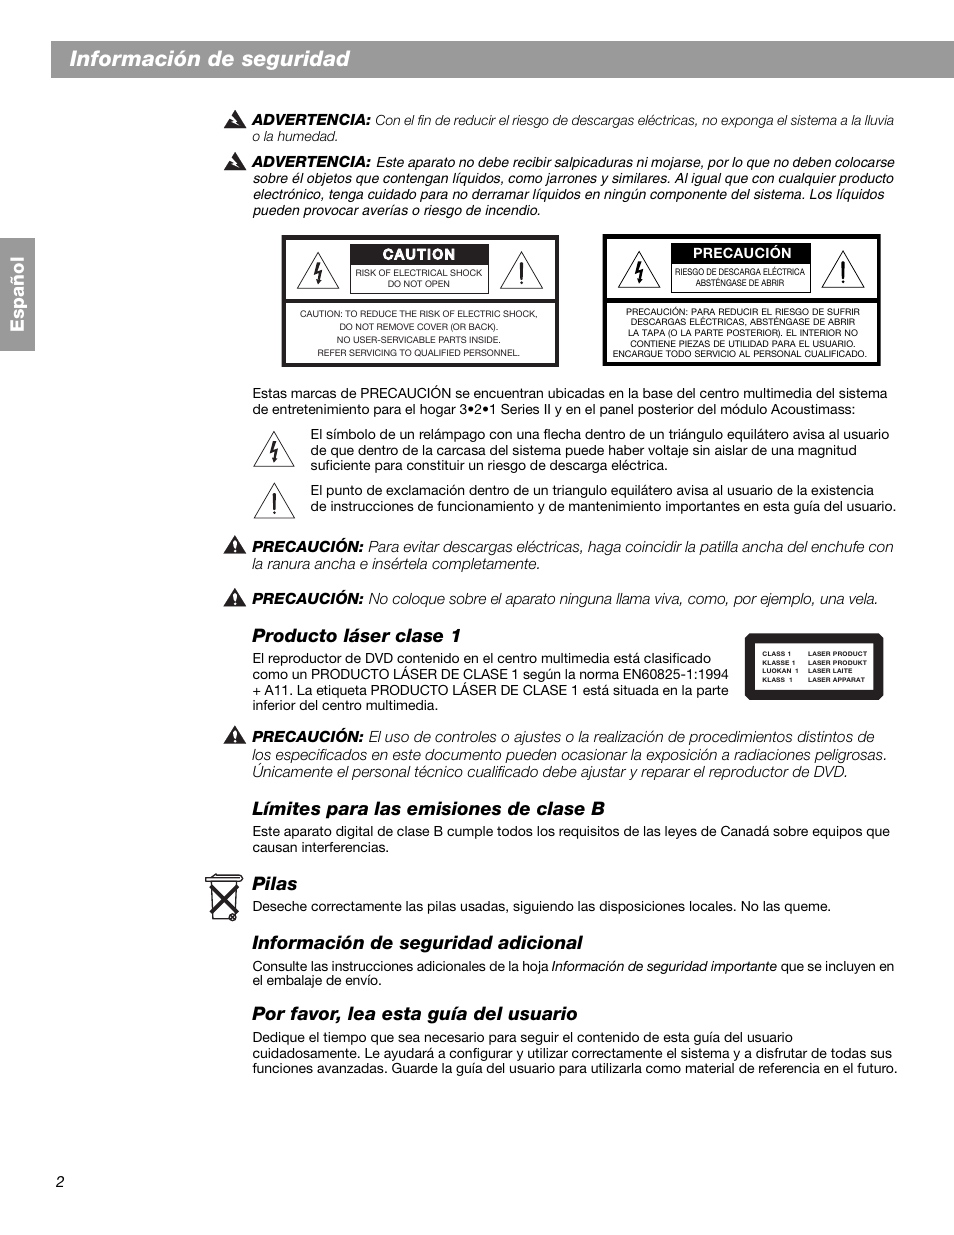 Información de seguridad, Español, Producto láser clase 1 | Bose 3.2.1 GS  Series II User Manual | Page 58 / 180 | Original mode